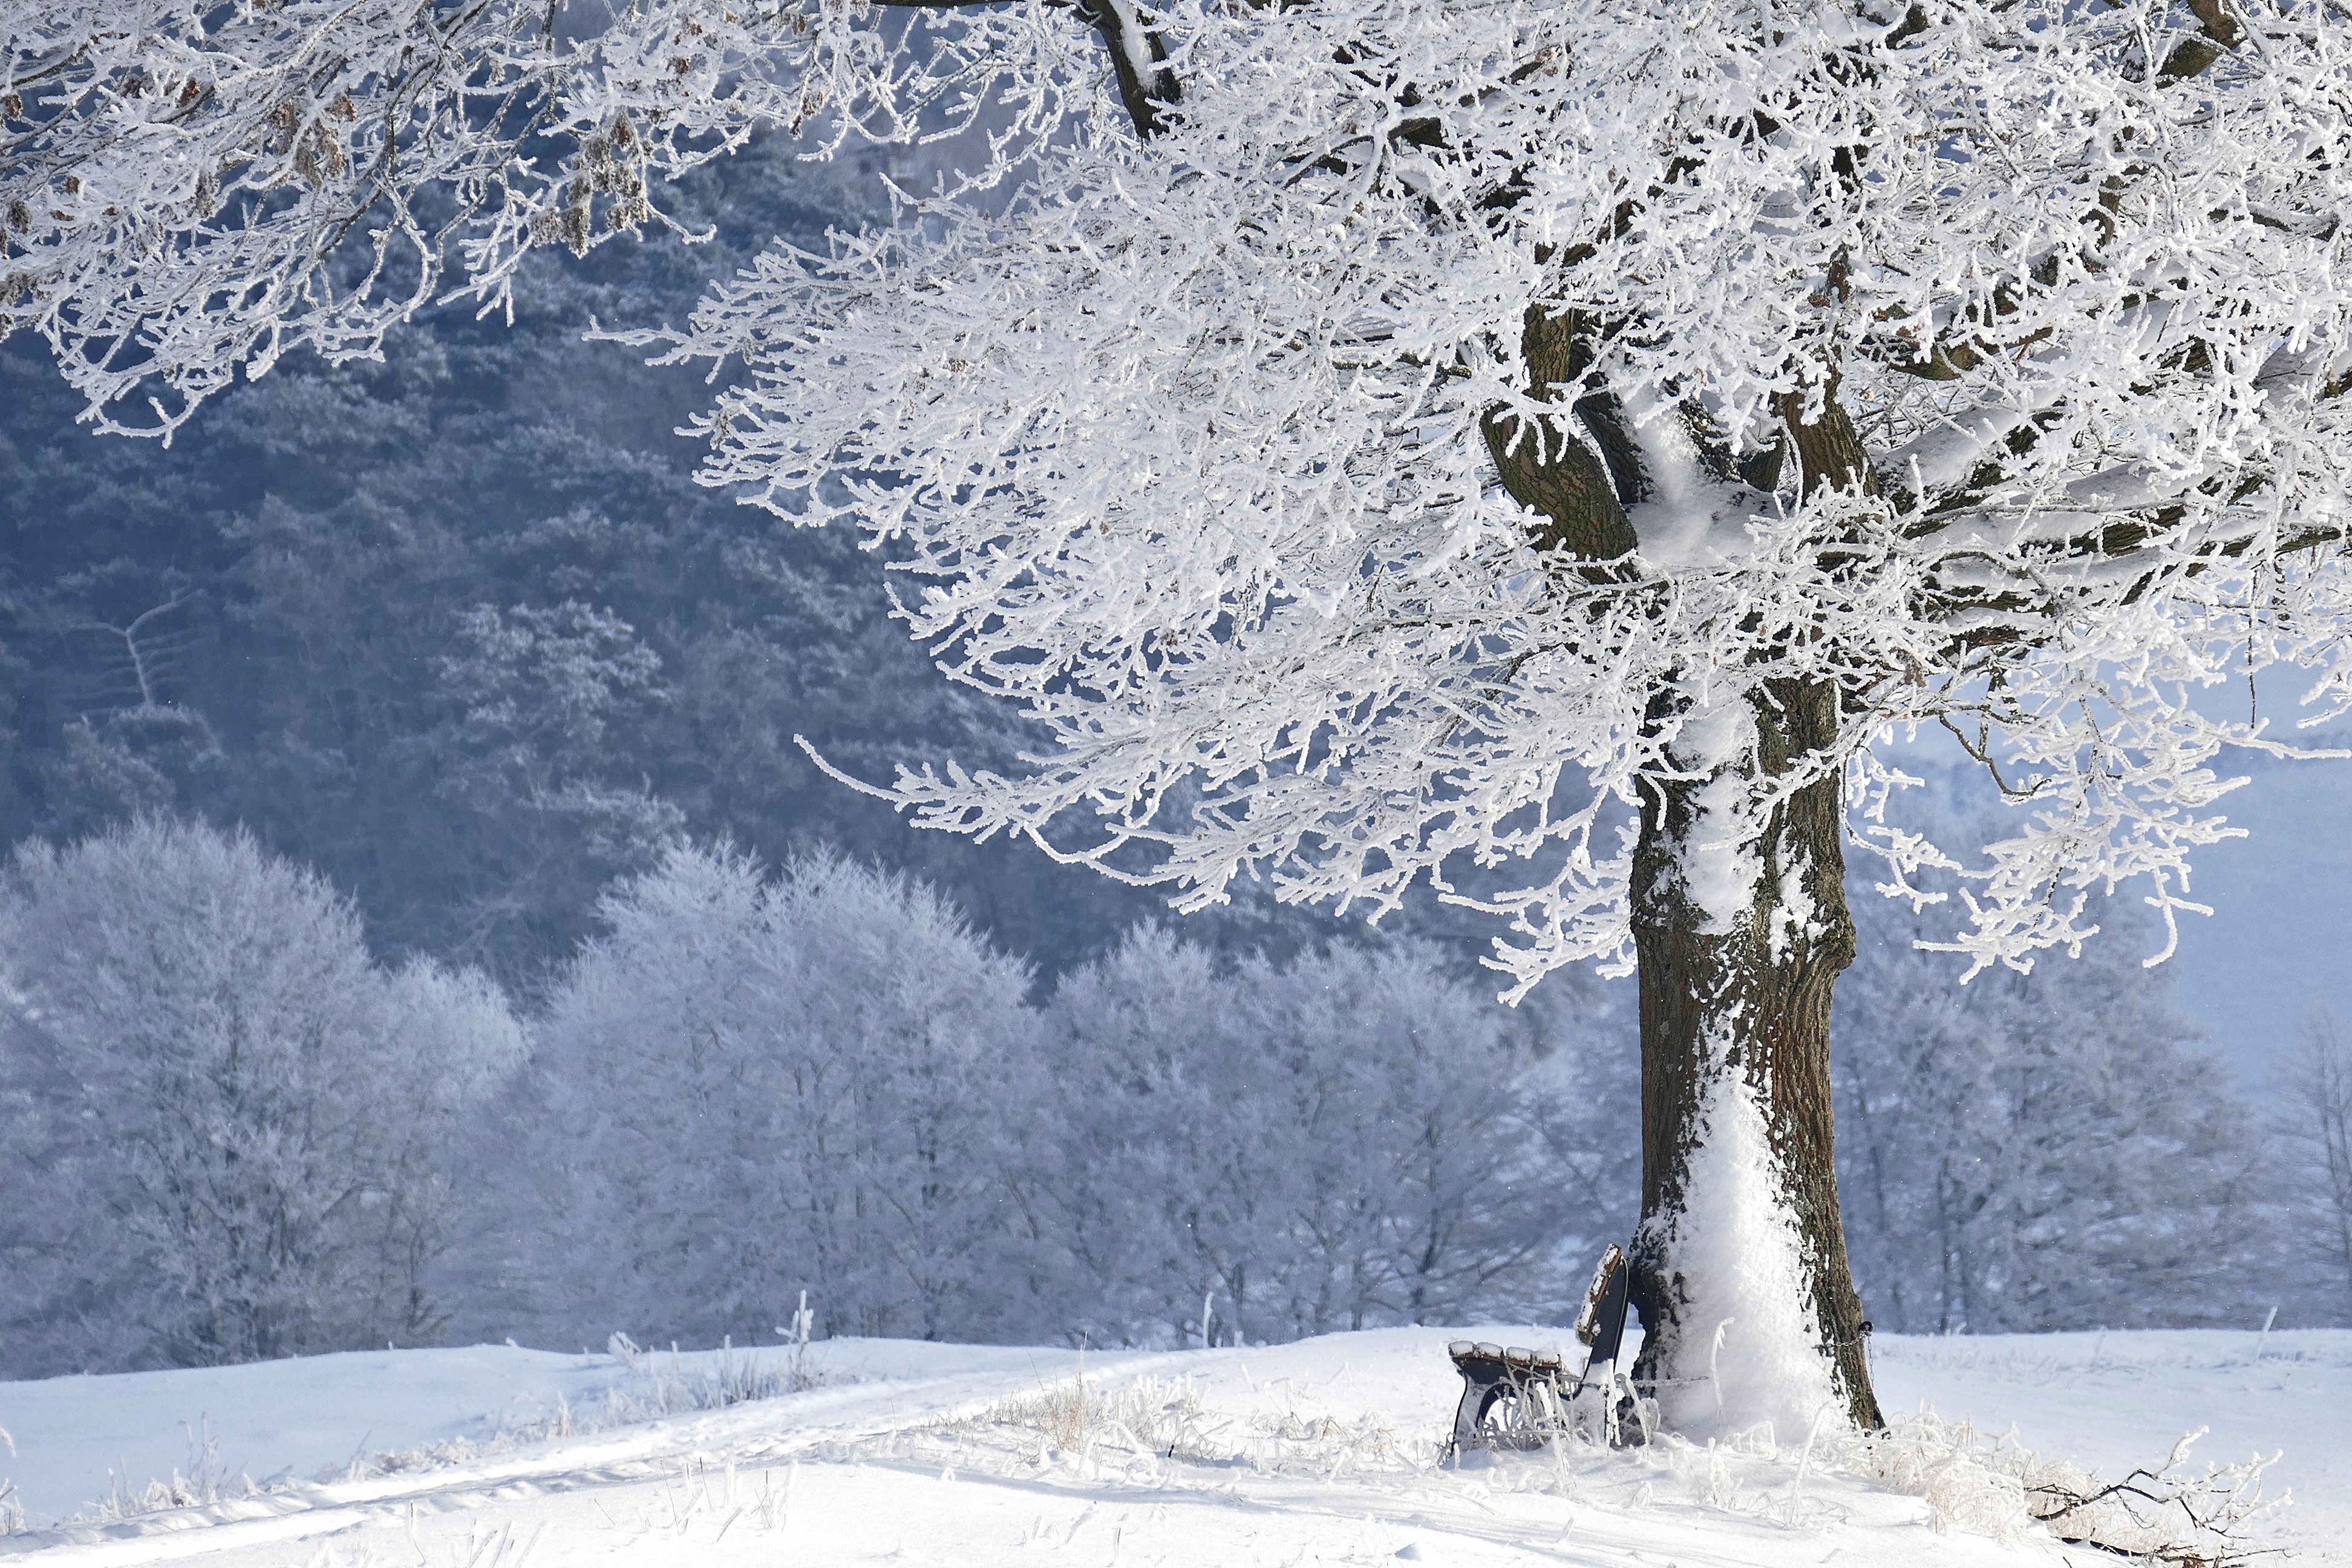 Скачать обои бесплатно Зима, Снег, Парк, Дерево, Мороз, Скамейка, Фотографии картинка на рабочий стол ПК